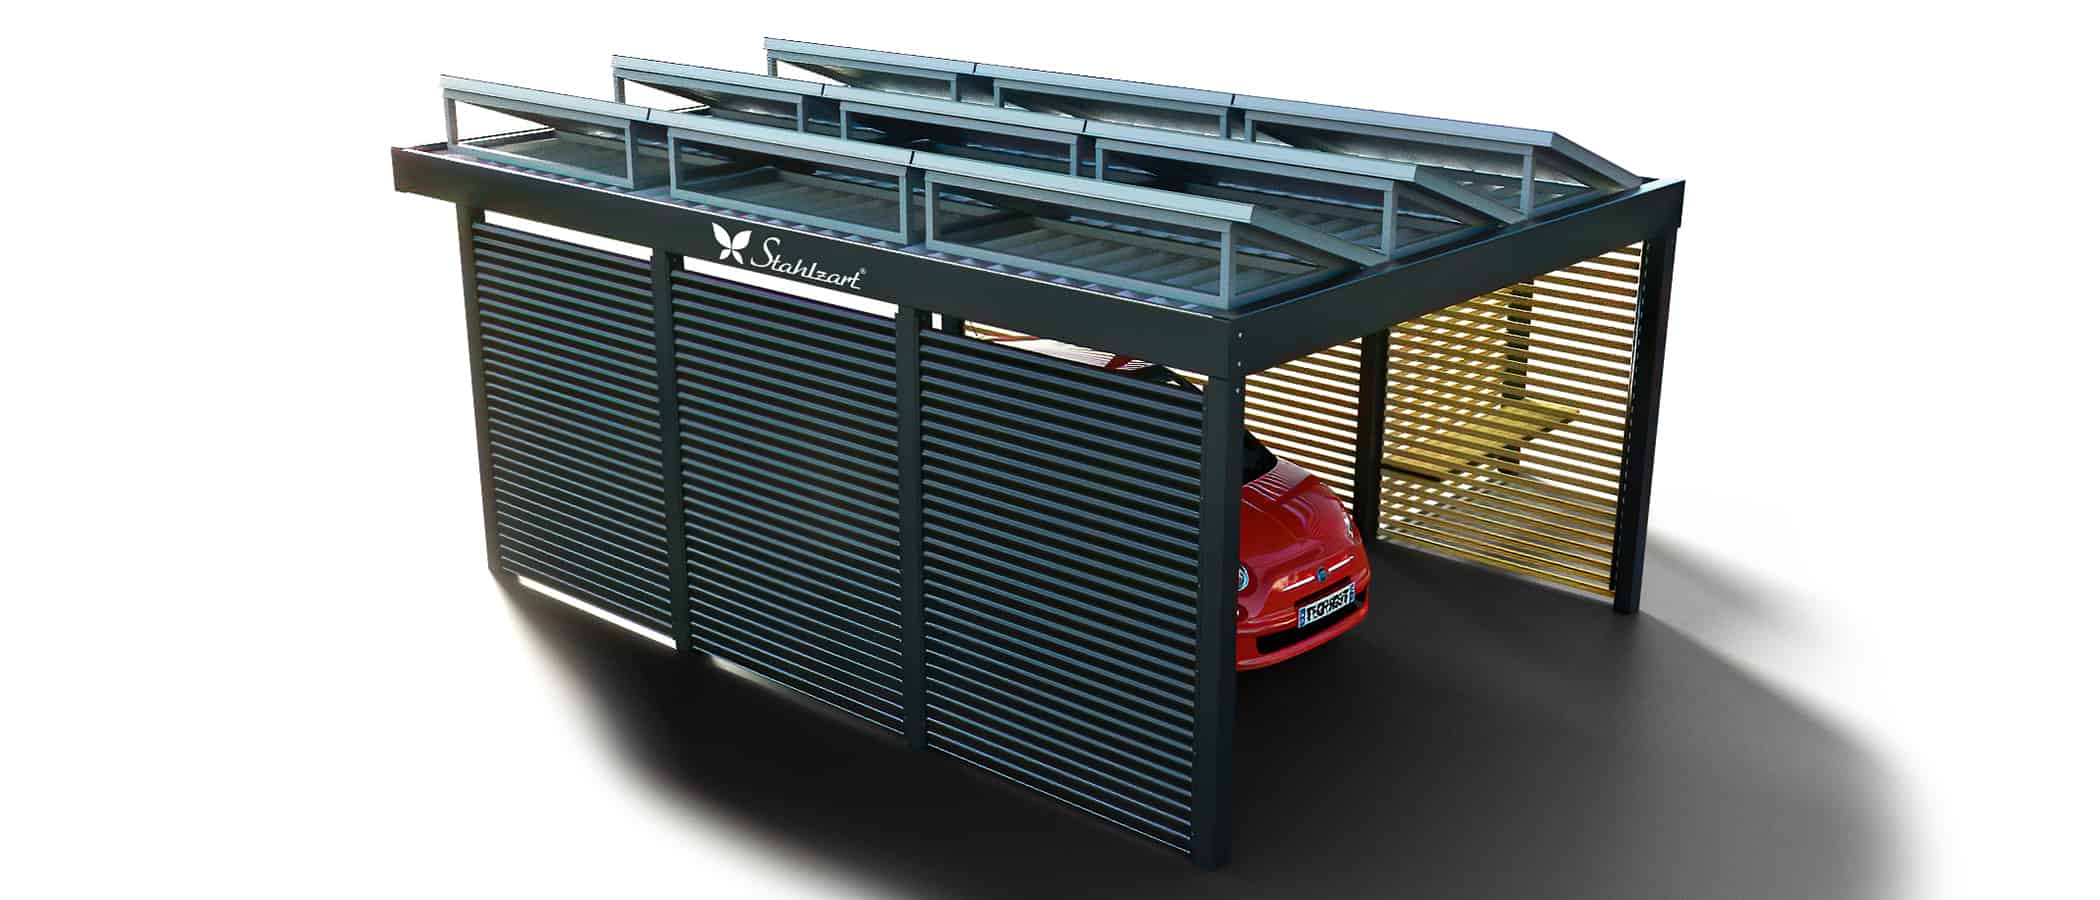 solar-carport-mit-flachdach-carports-pv-anlage-solaranlage-photovoltaik-garagen-garagendach-solarcarport-installation-solarmodulen-solarcarports-flaechen-dach-e-autos-fiat-holz-metall-stahlzart